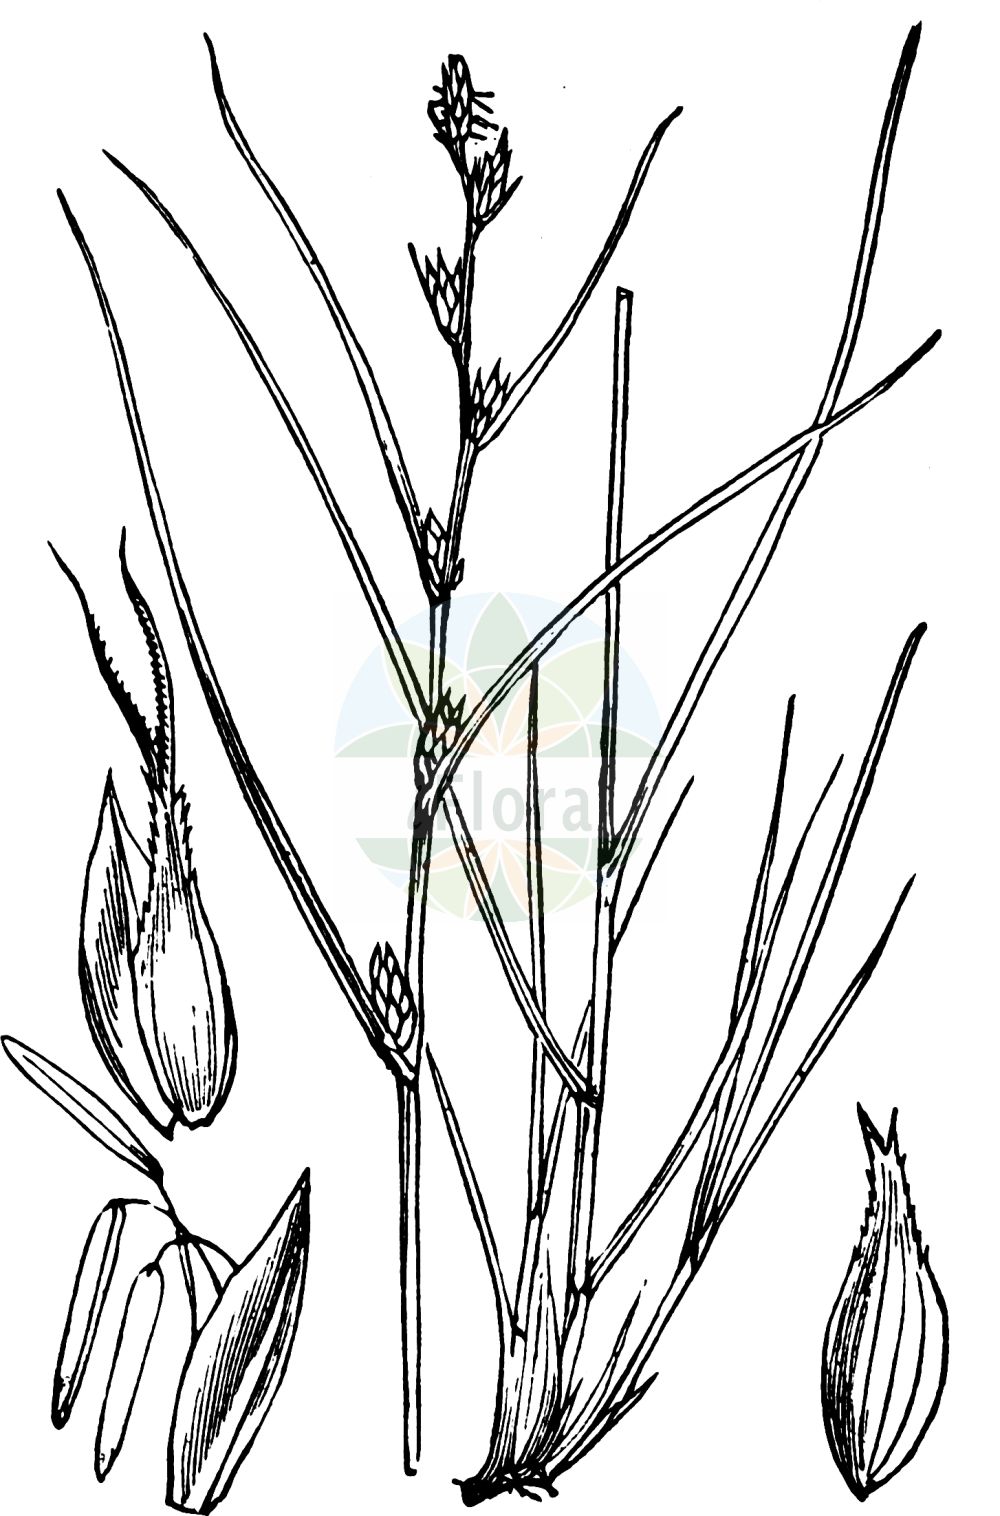 Historische Abbildung von Carex remota (Winkel-Segge - Remote Sedge). Das Bild zeigt Blatt, Bluete, Frucht und Same. ---- Historical Drawing of Carex remota (Winkel-Segge - Remote Sedge). The image is showing leaf, flower, fruit and seed.(Carex remota,Winkel-Segge,Remote Sedge,Carex axillaris,Carex remota,Vignea remota,Winkel-Segge,Entferntaehrige Wald-Segge,Remote Sedge,Distant-flowered Sedge,Carex,Segge,Sedge,Cyperaceae,Sauergräser,Sedge family,Blatt,Bluete,Frucht,Same,leaf,flower,fruit,seed,Fitch et al. (1880))